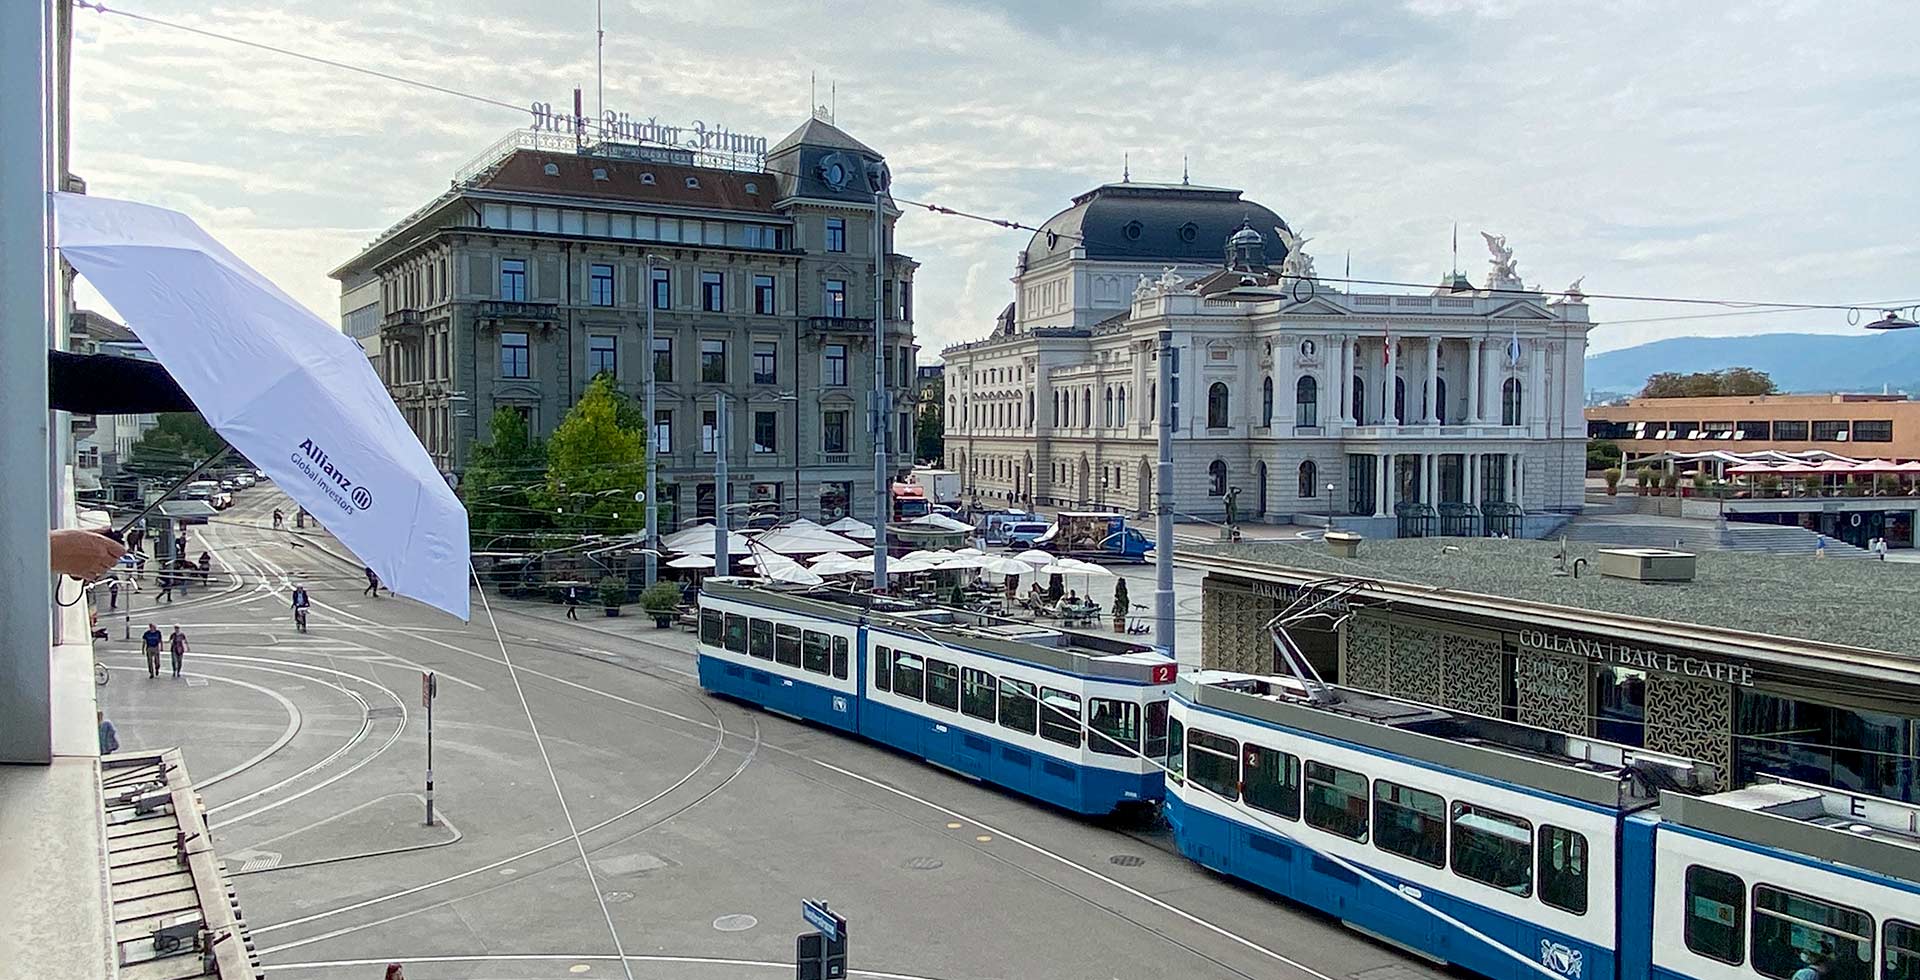 Eine Ansicht eines Stadtplatzes in Zürich mit vorbeifahrenden Straßenbahnen, Spaziergängern und einem Schirm mit dem Allianz-Logo im Vordergrund.